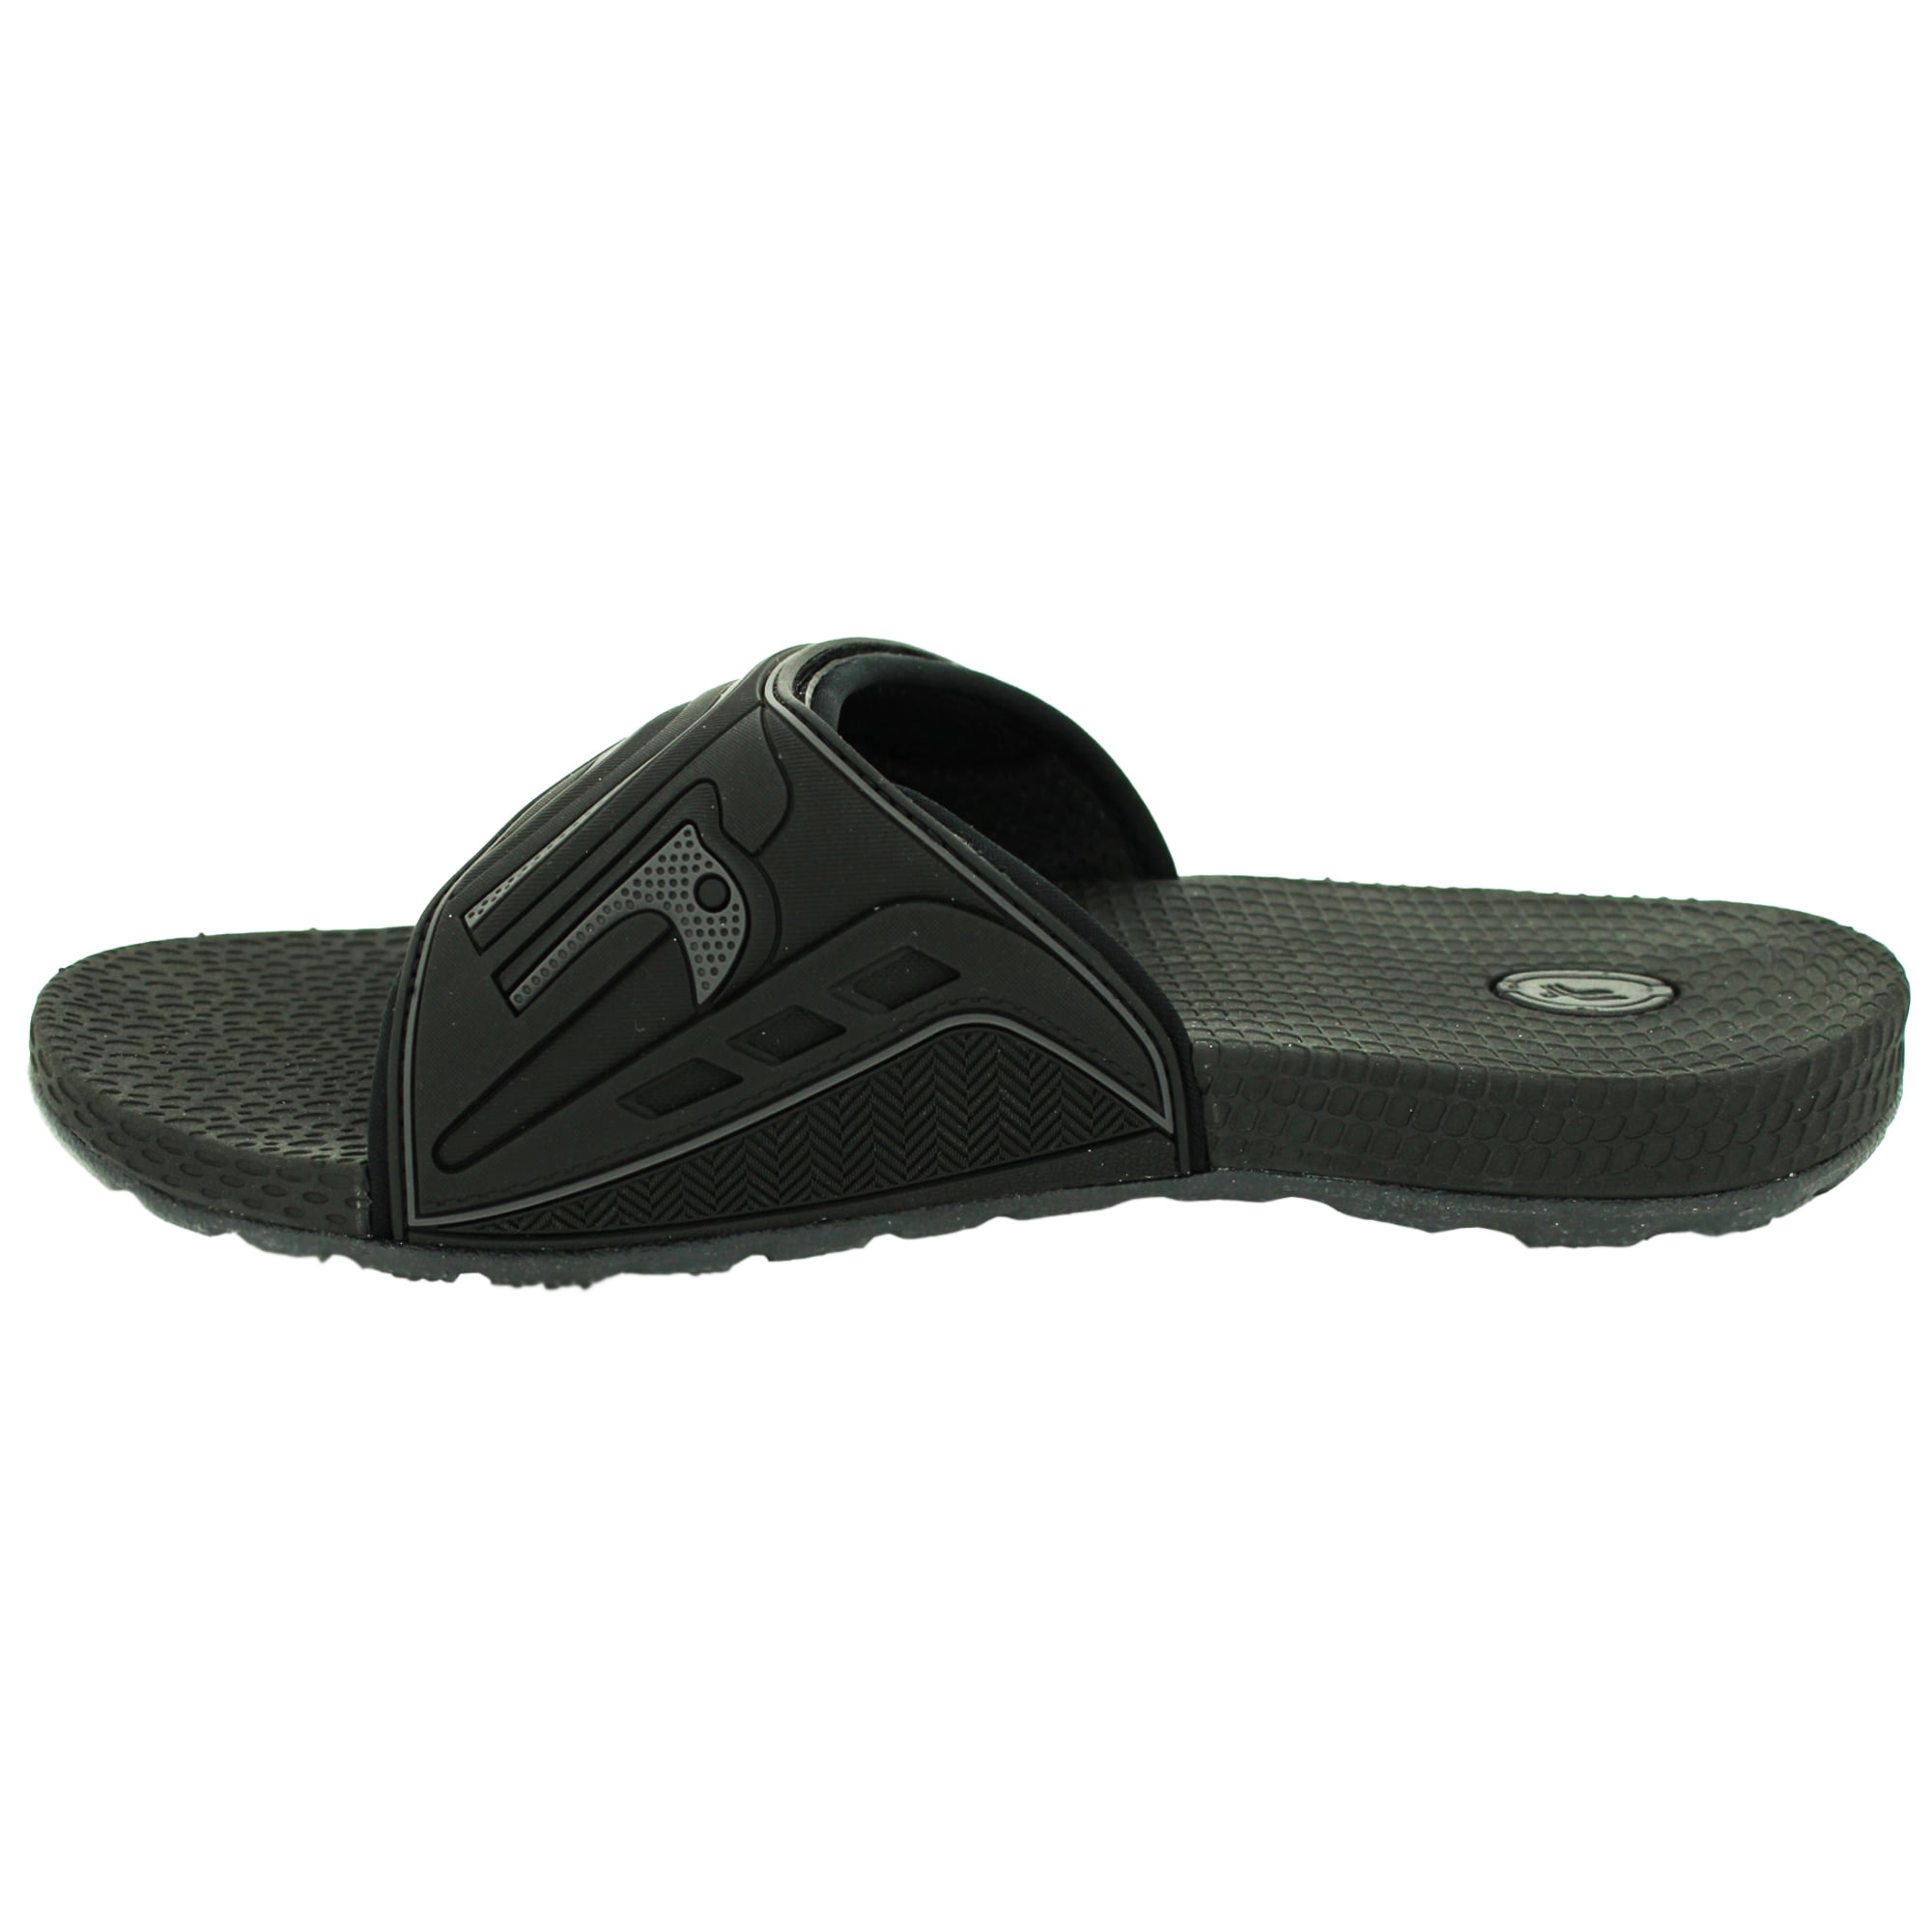 wide men's slide sandals